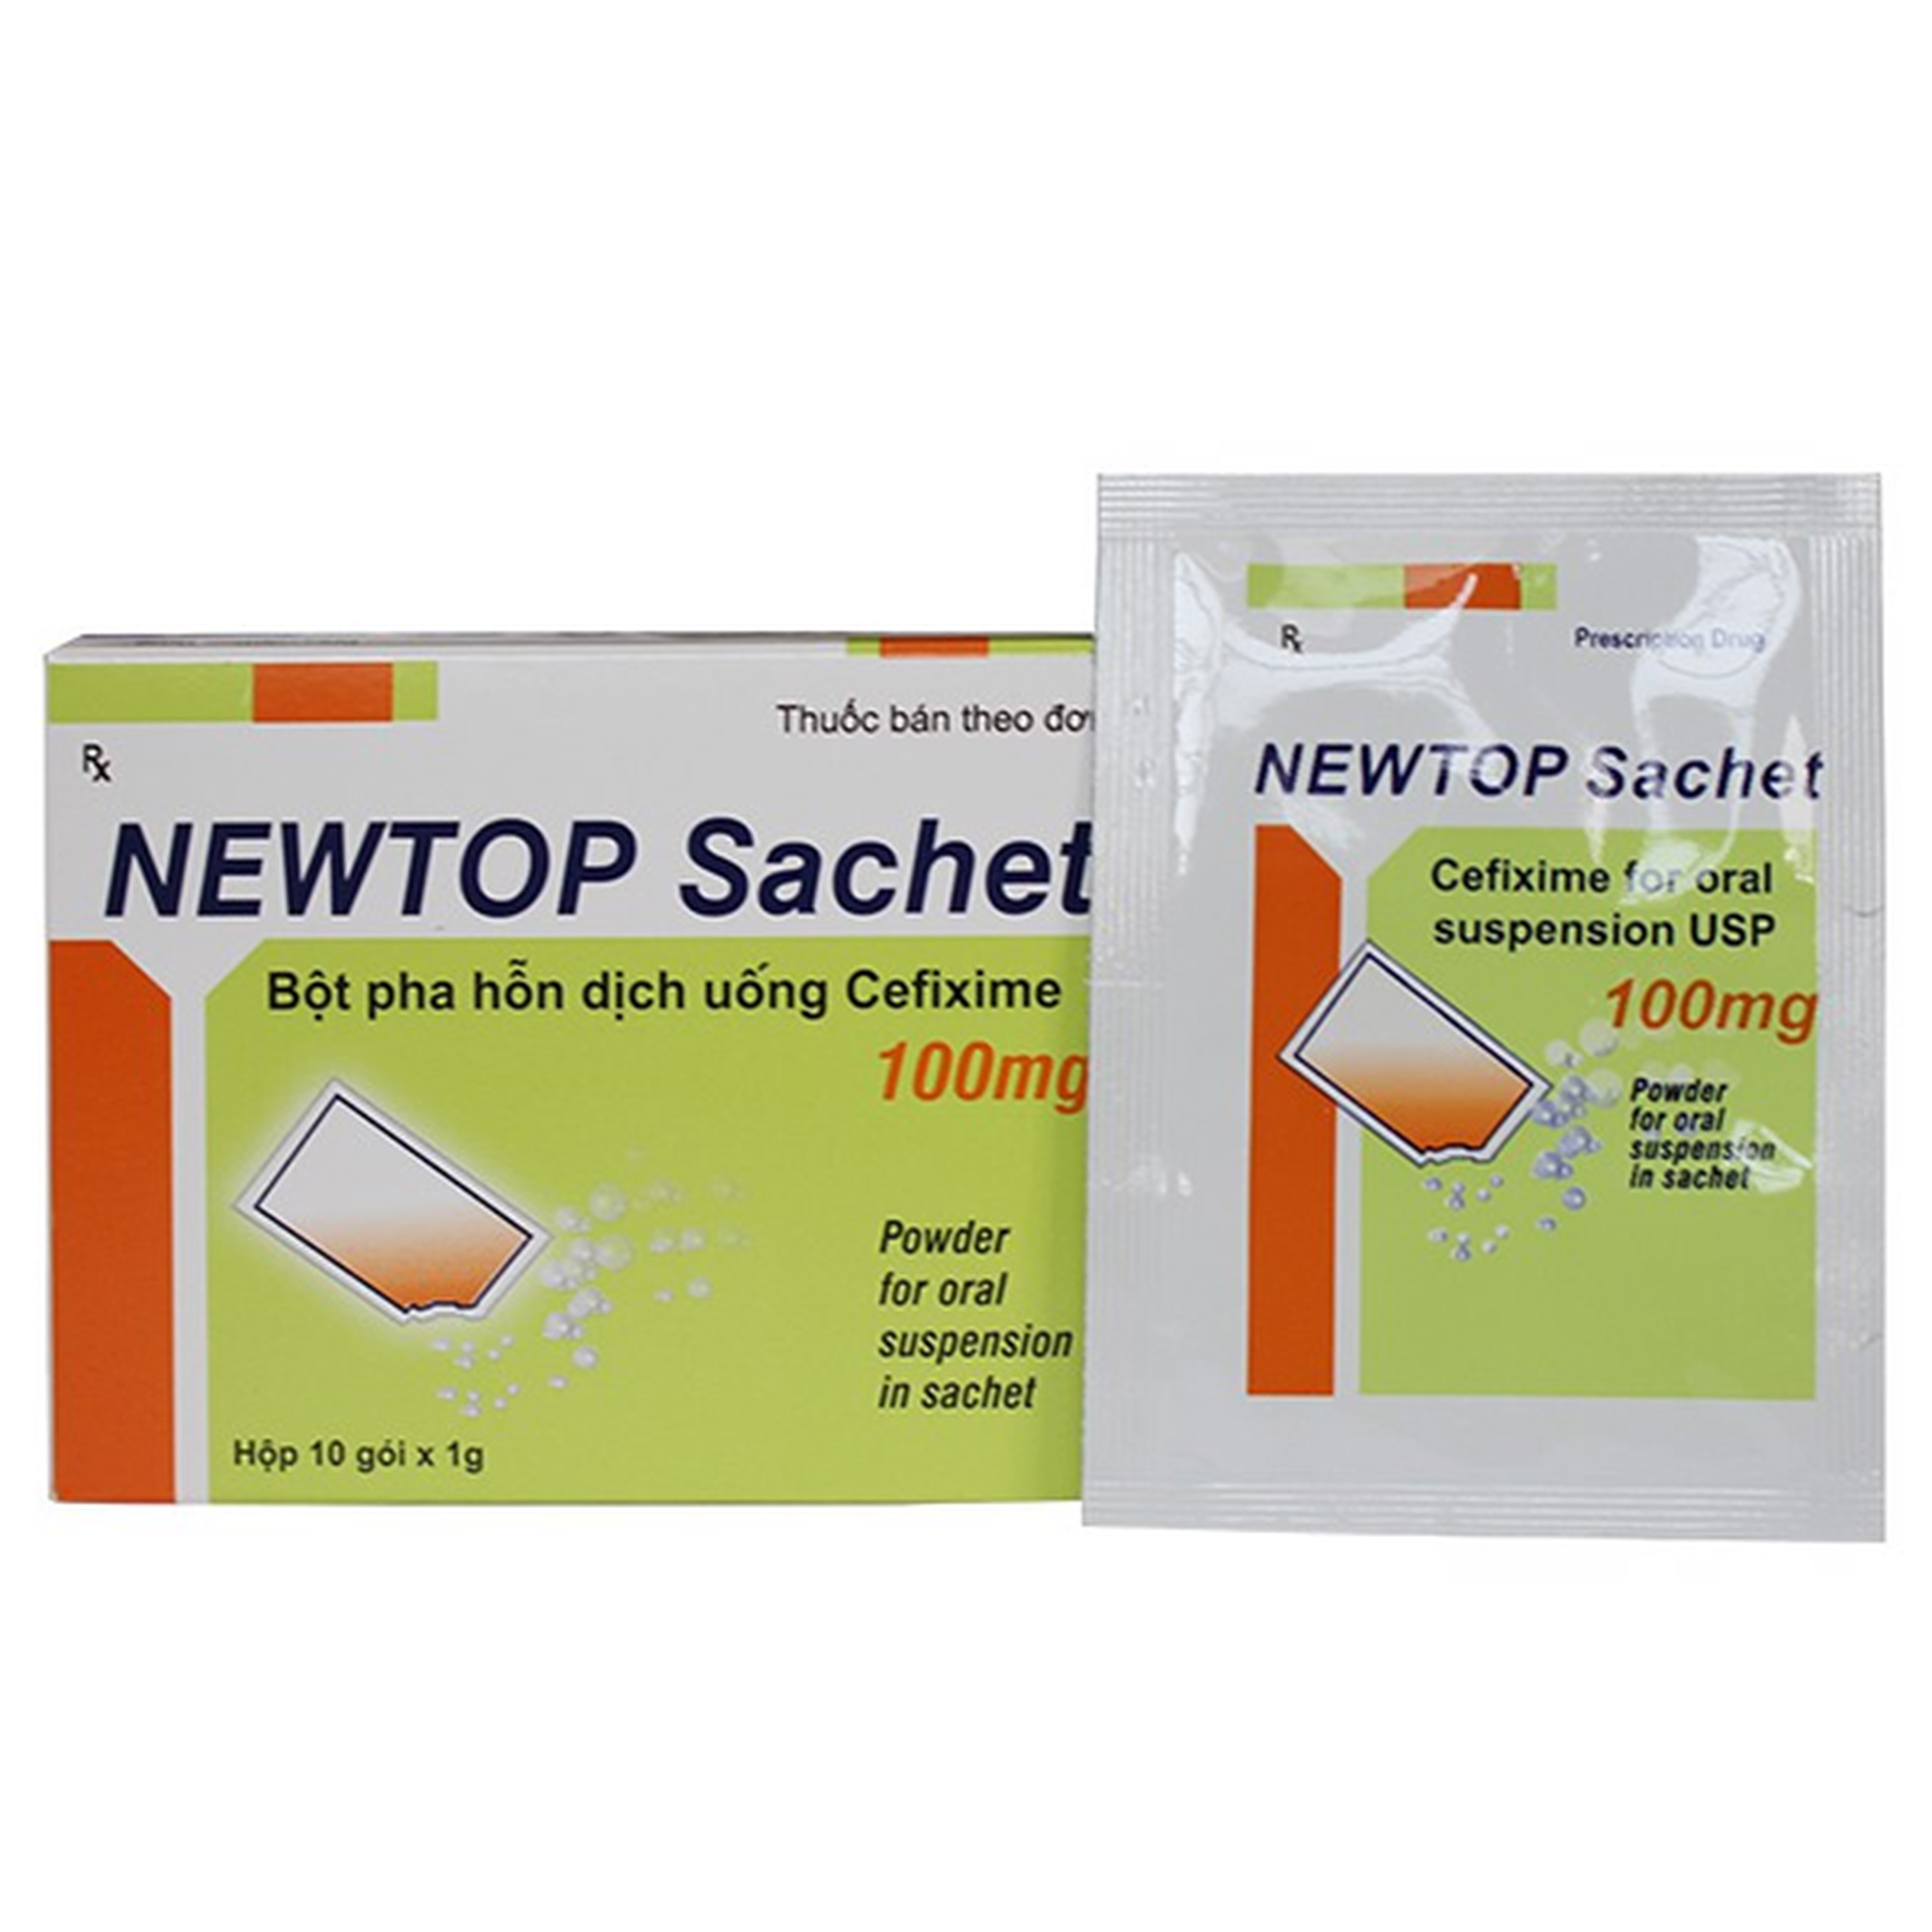 Bột pha hỗn dịch uống Newtop Sachet 100mg Maxim điều trị nhiễm khuẩn (10 gói x 1g)